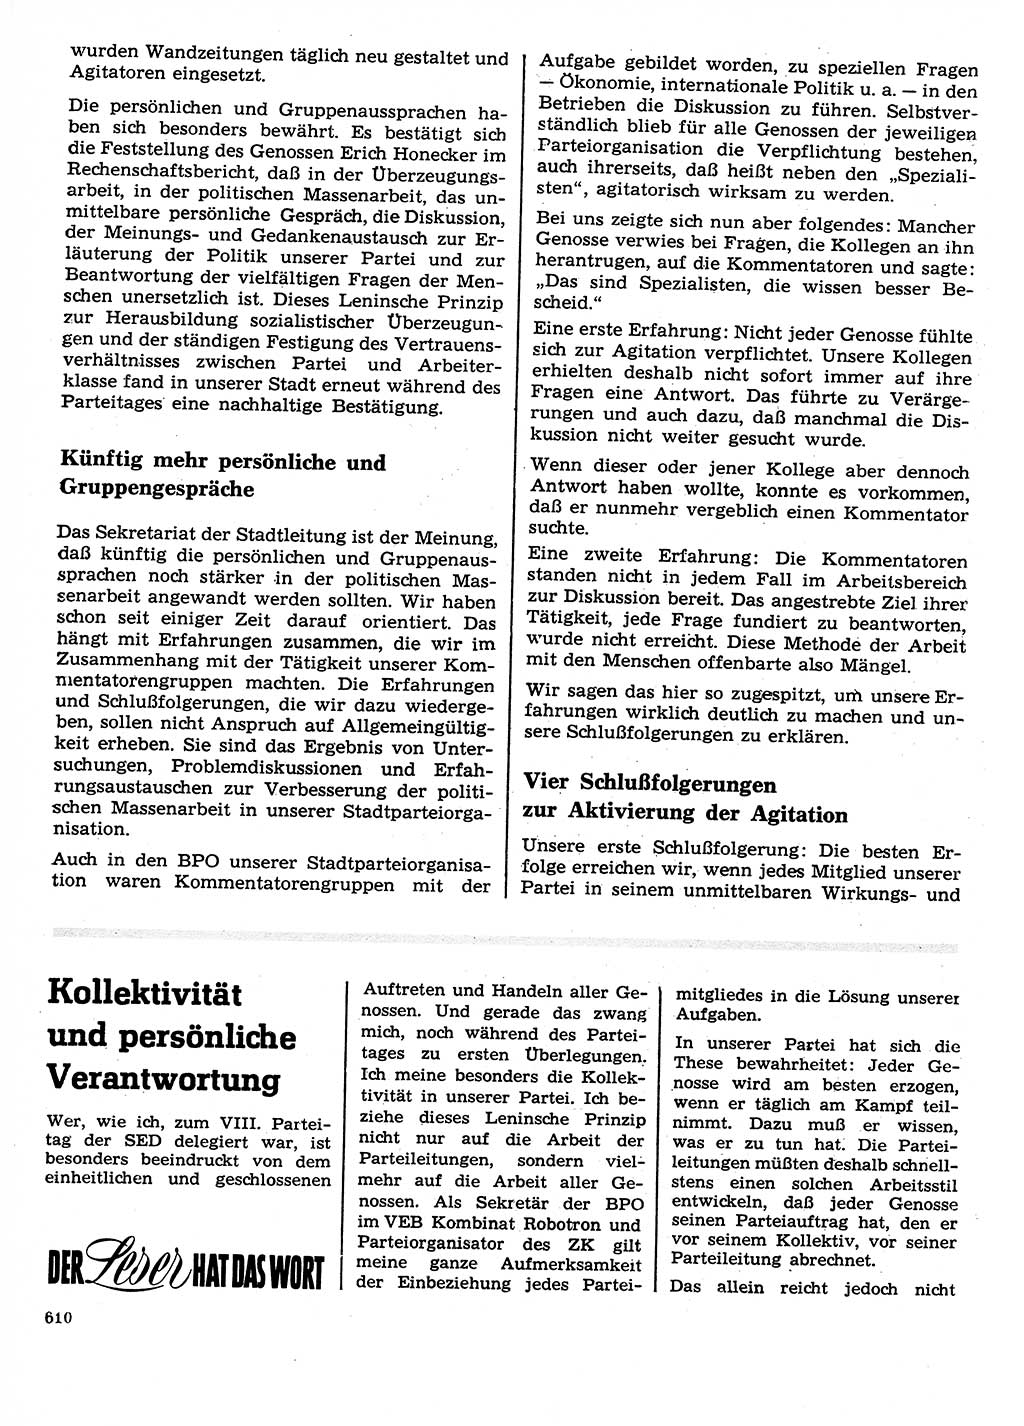 Neuer Weg (NW), Organ des Zentralkomitees (ZK) der SED (Sozialistische Einheitspartei Deutschlands) für Fragen des Parteilebens, 26. Jahrgang [Deutsche Demokratische Republik (DDR)] 1971, Seite 610 (NW ZK SED DDR 1971, S. 610)